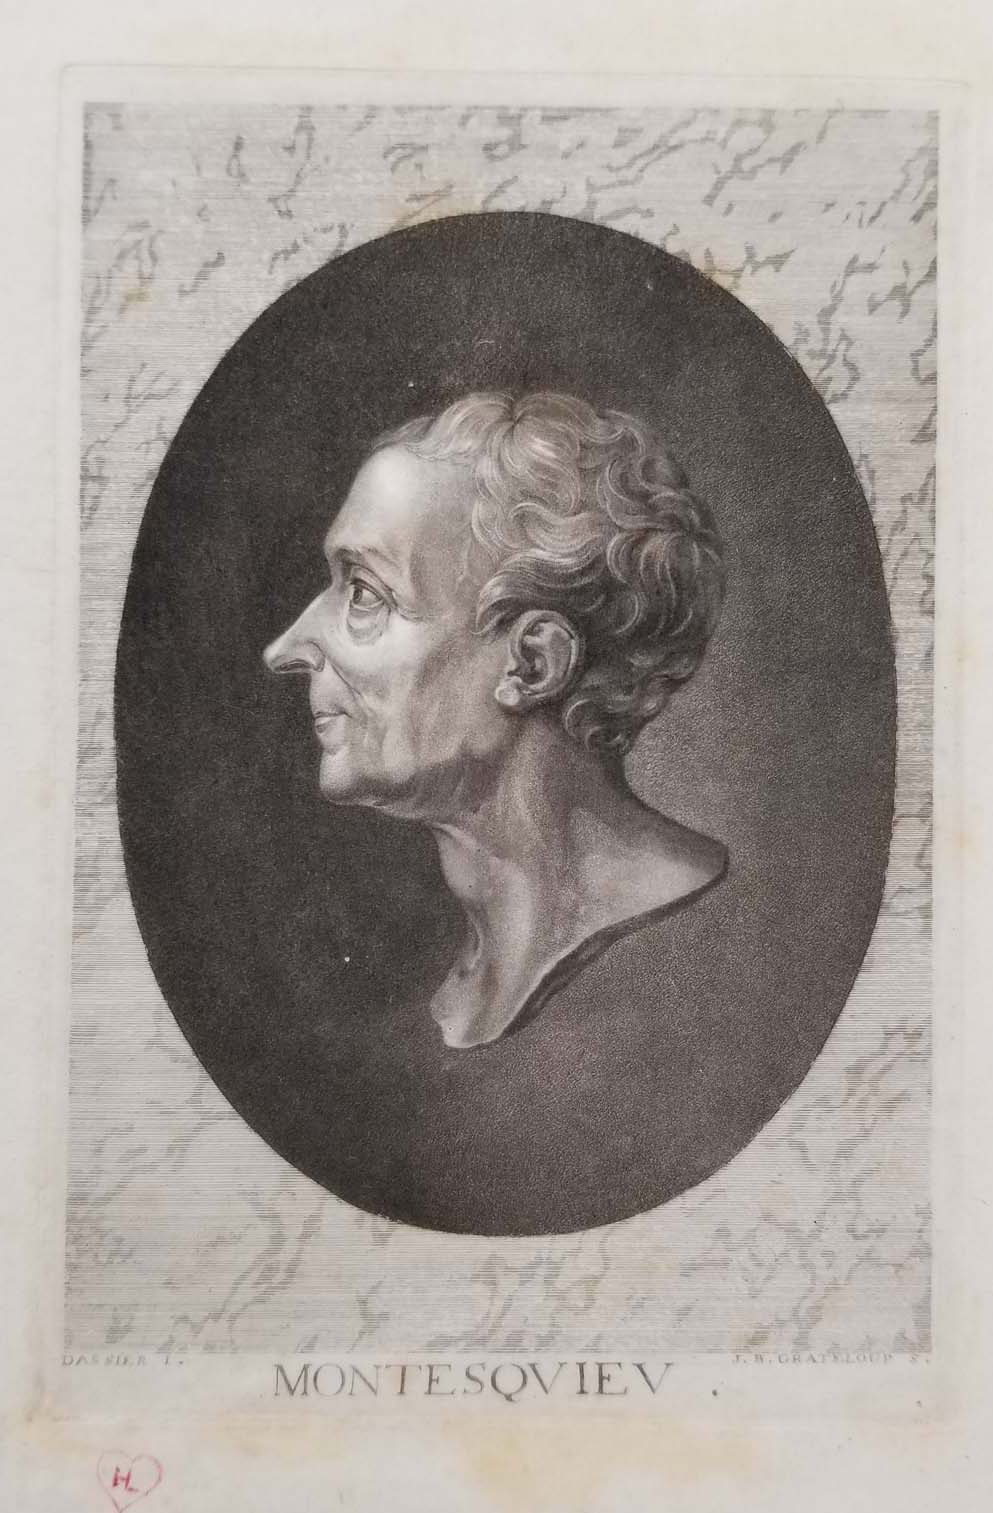 Portrait de Montesquieu (La Brède 1689 † 1755 Paris).  1768.